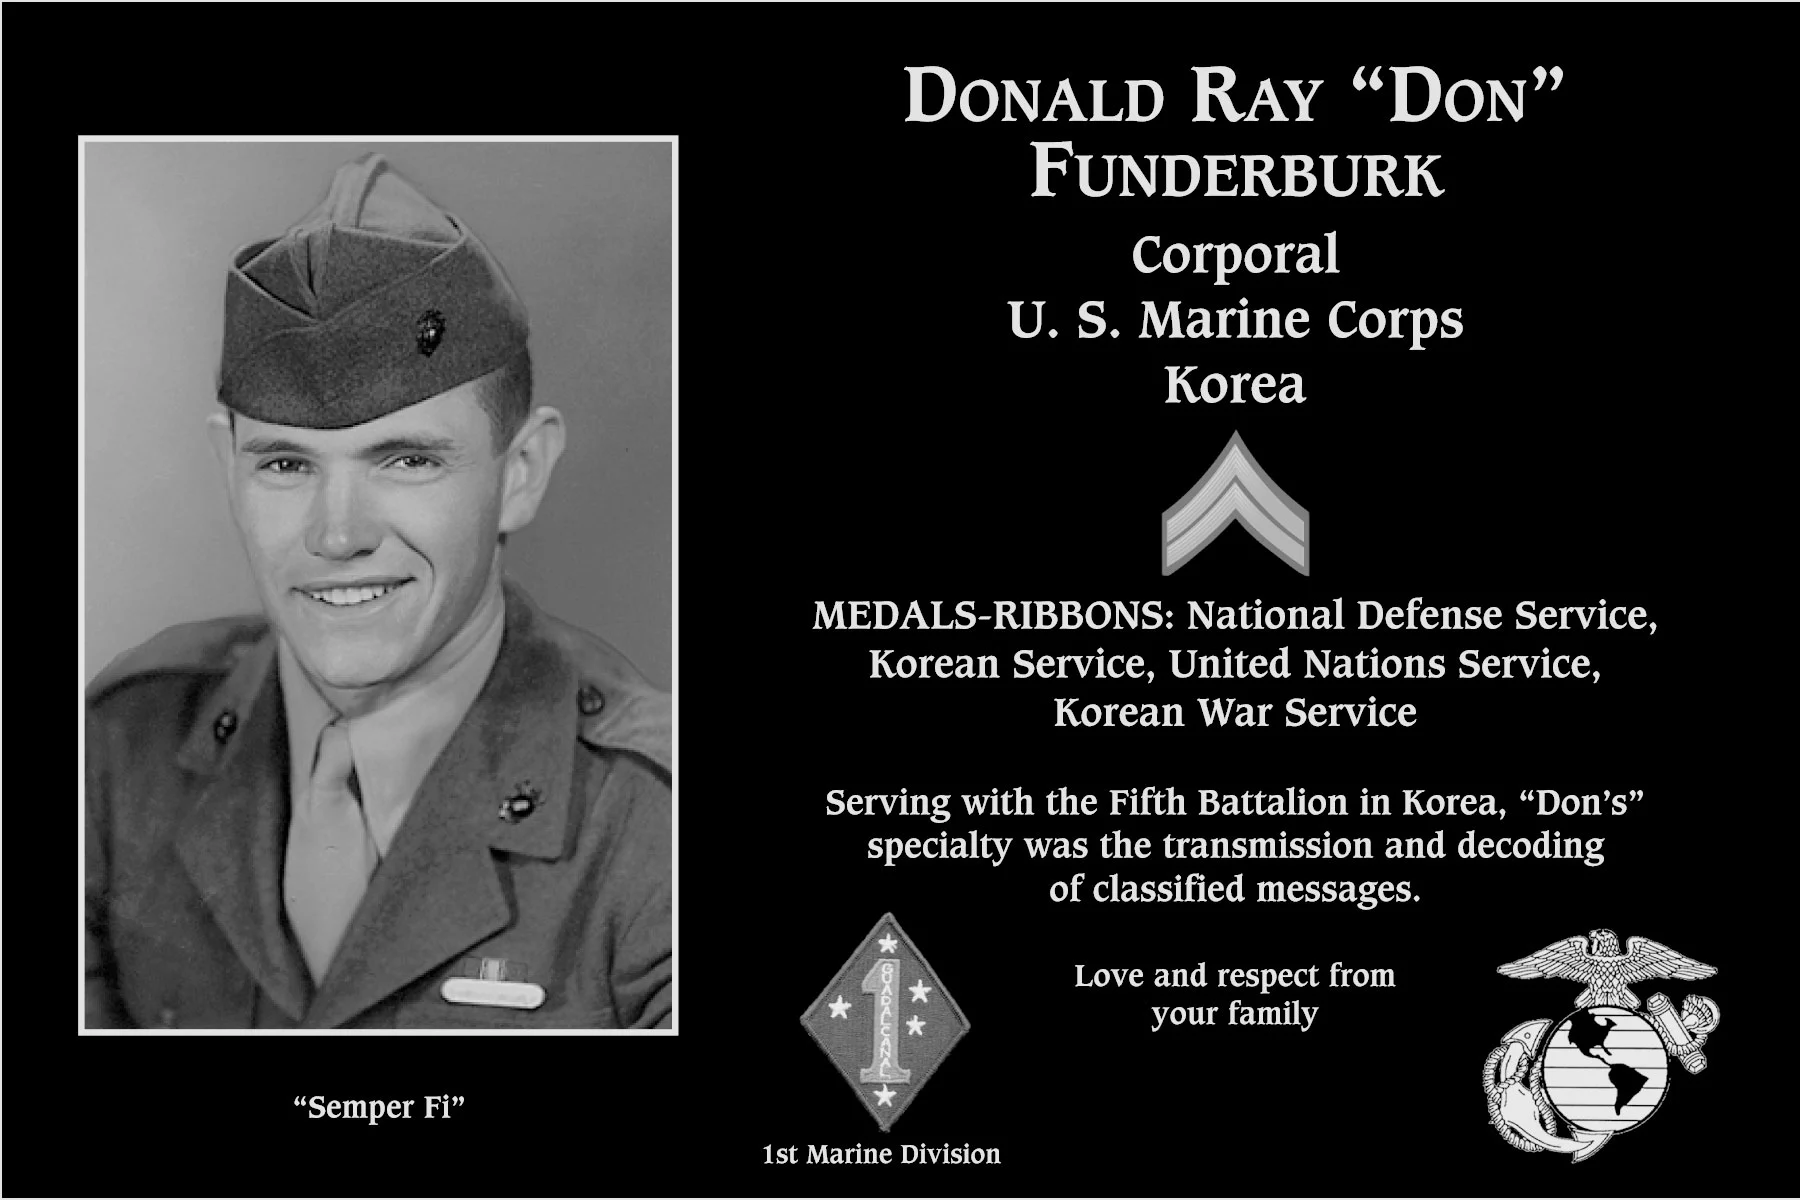 Donald Ray “Don” Funderburk